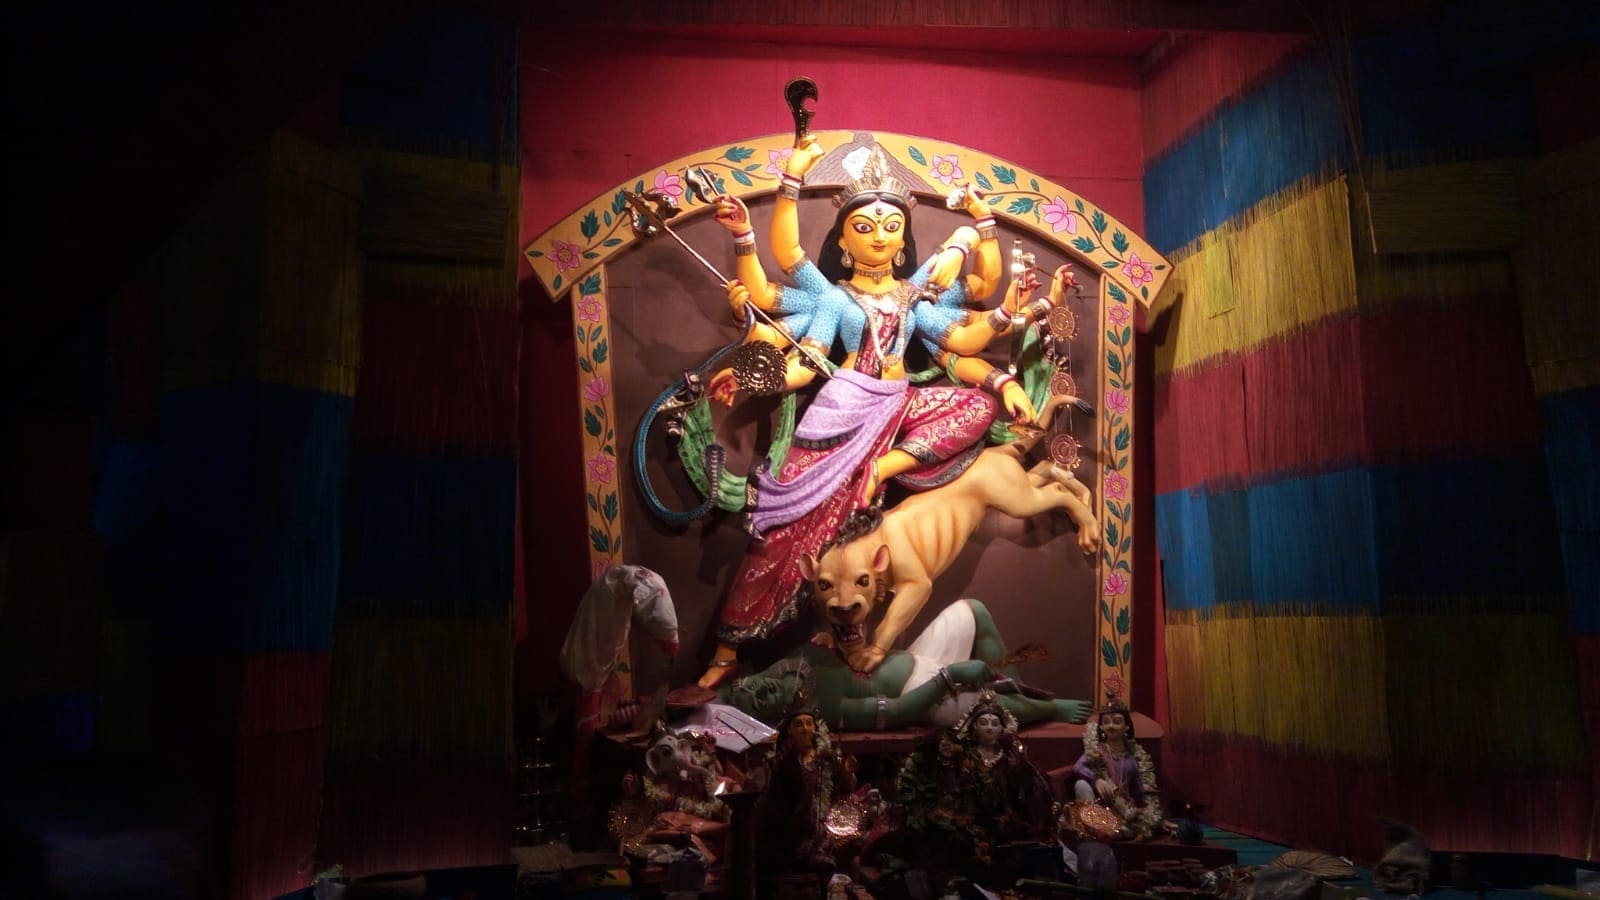 Durga at a Durga Pujo pandal